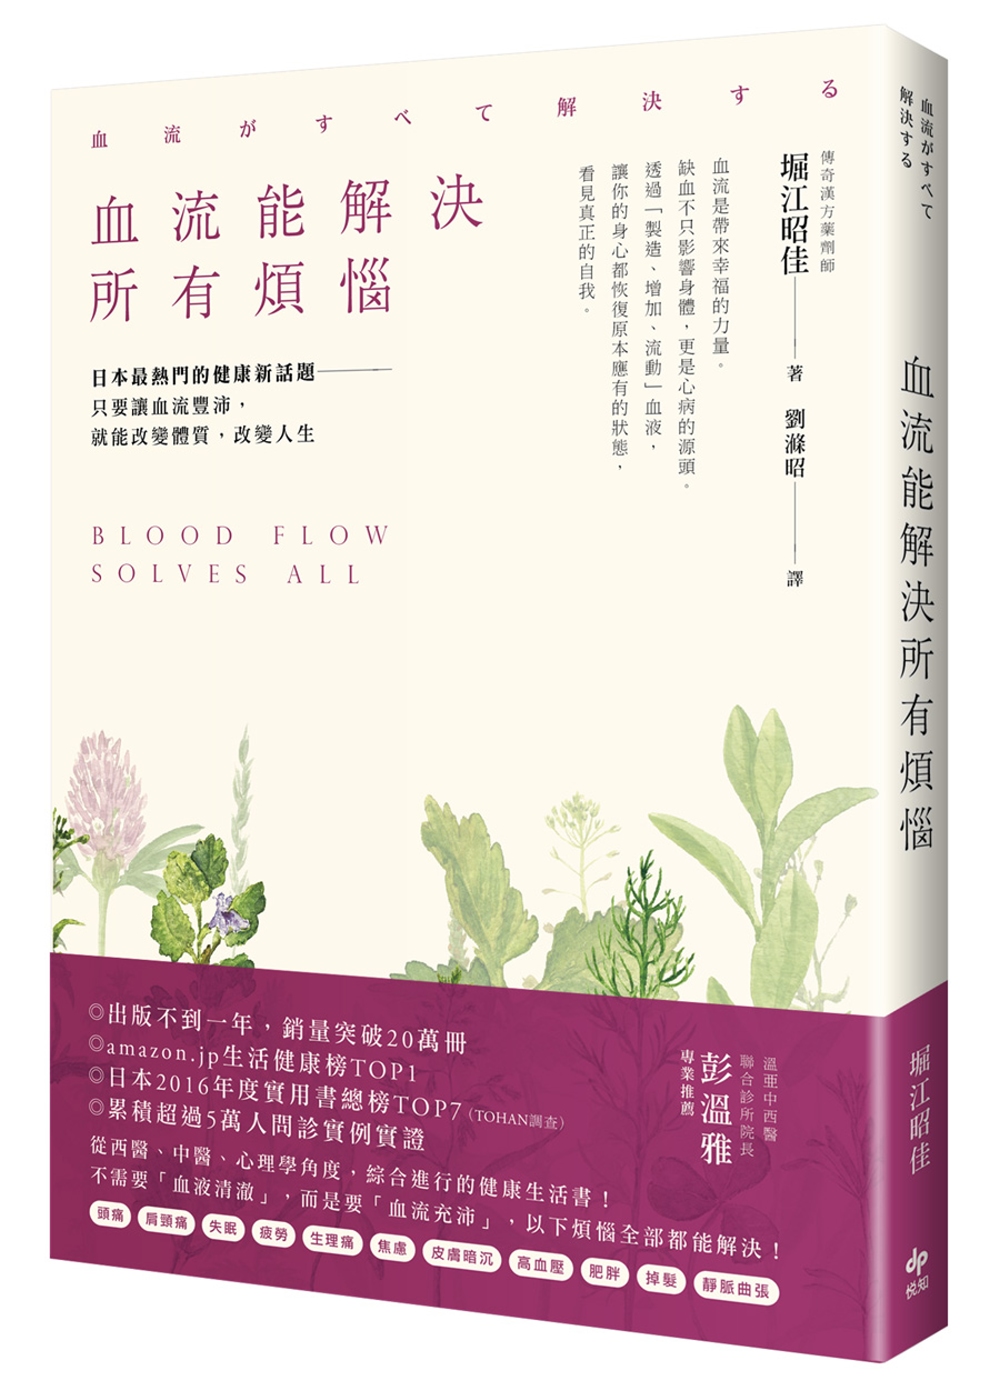 血流能解決所有煩惱：日本最熱門的健康新話題──只要讓血流豐沛...